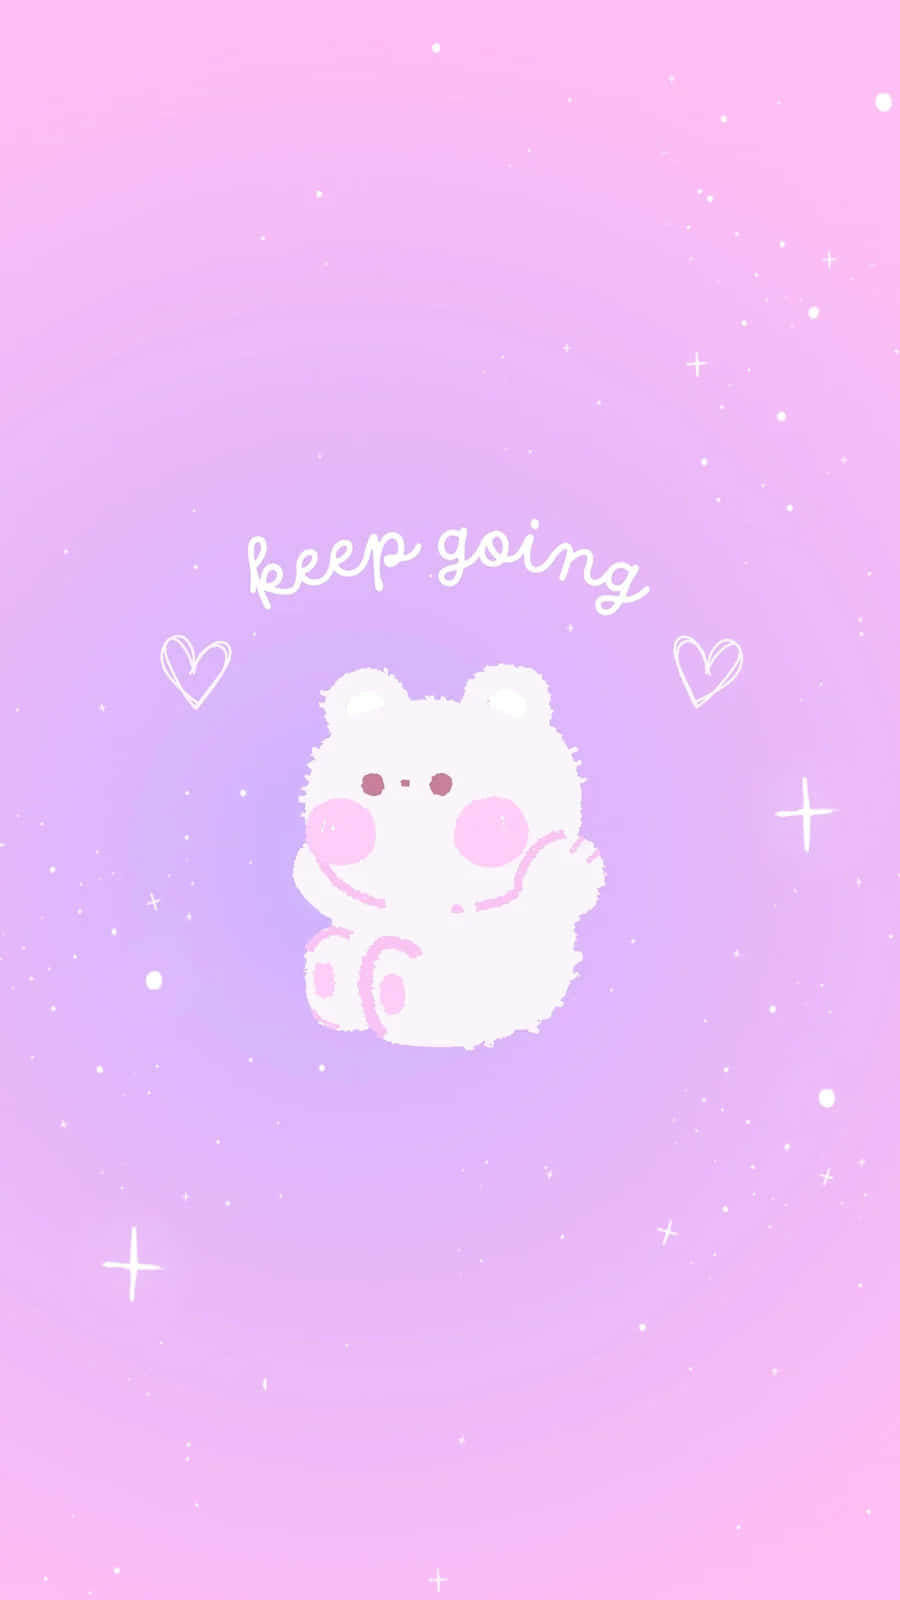 Keep Going Cute Koala Inspiration Wallpaper